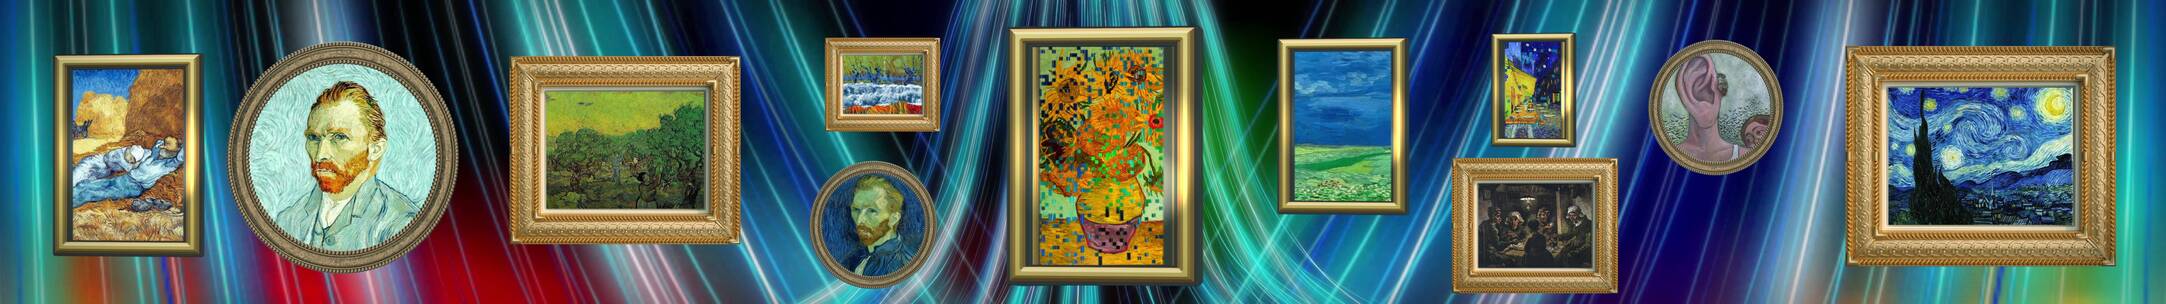 梵高墙画合集 向日葵艺术 油画